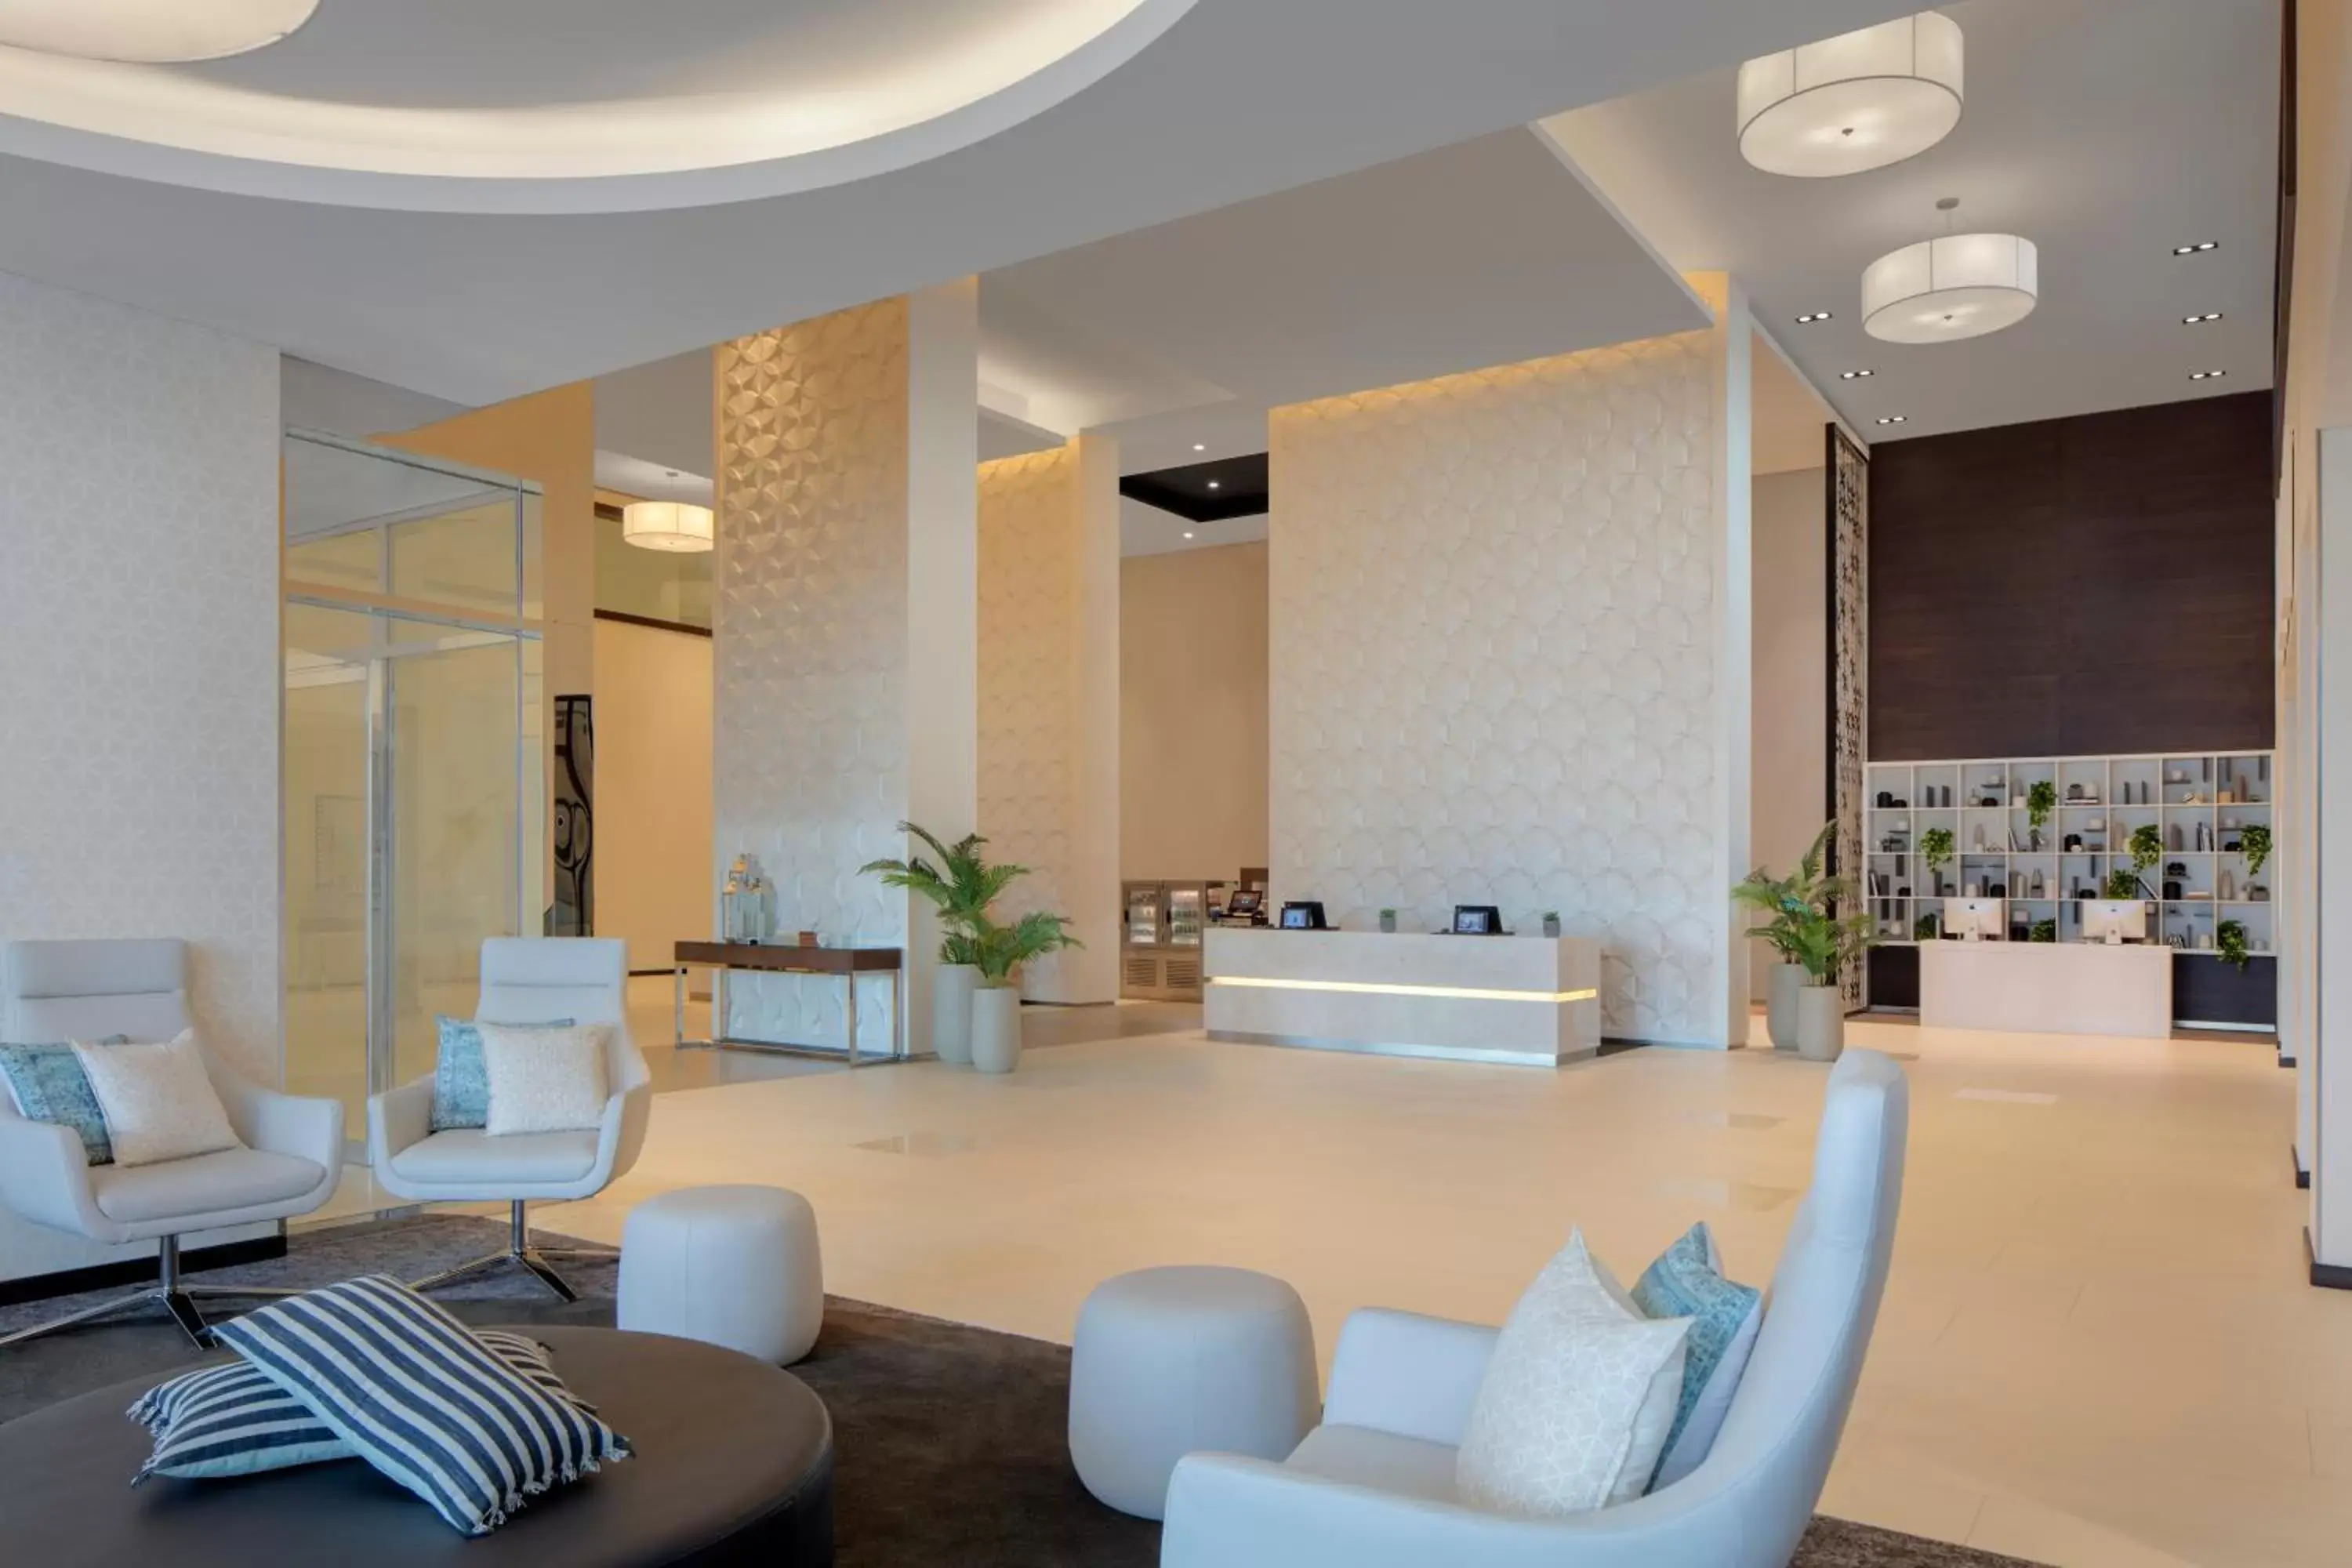 Lobby or reception in Hyatt Place Dubai Jumeirah